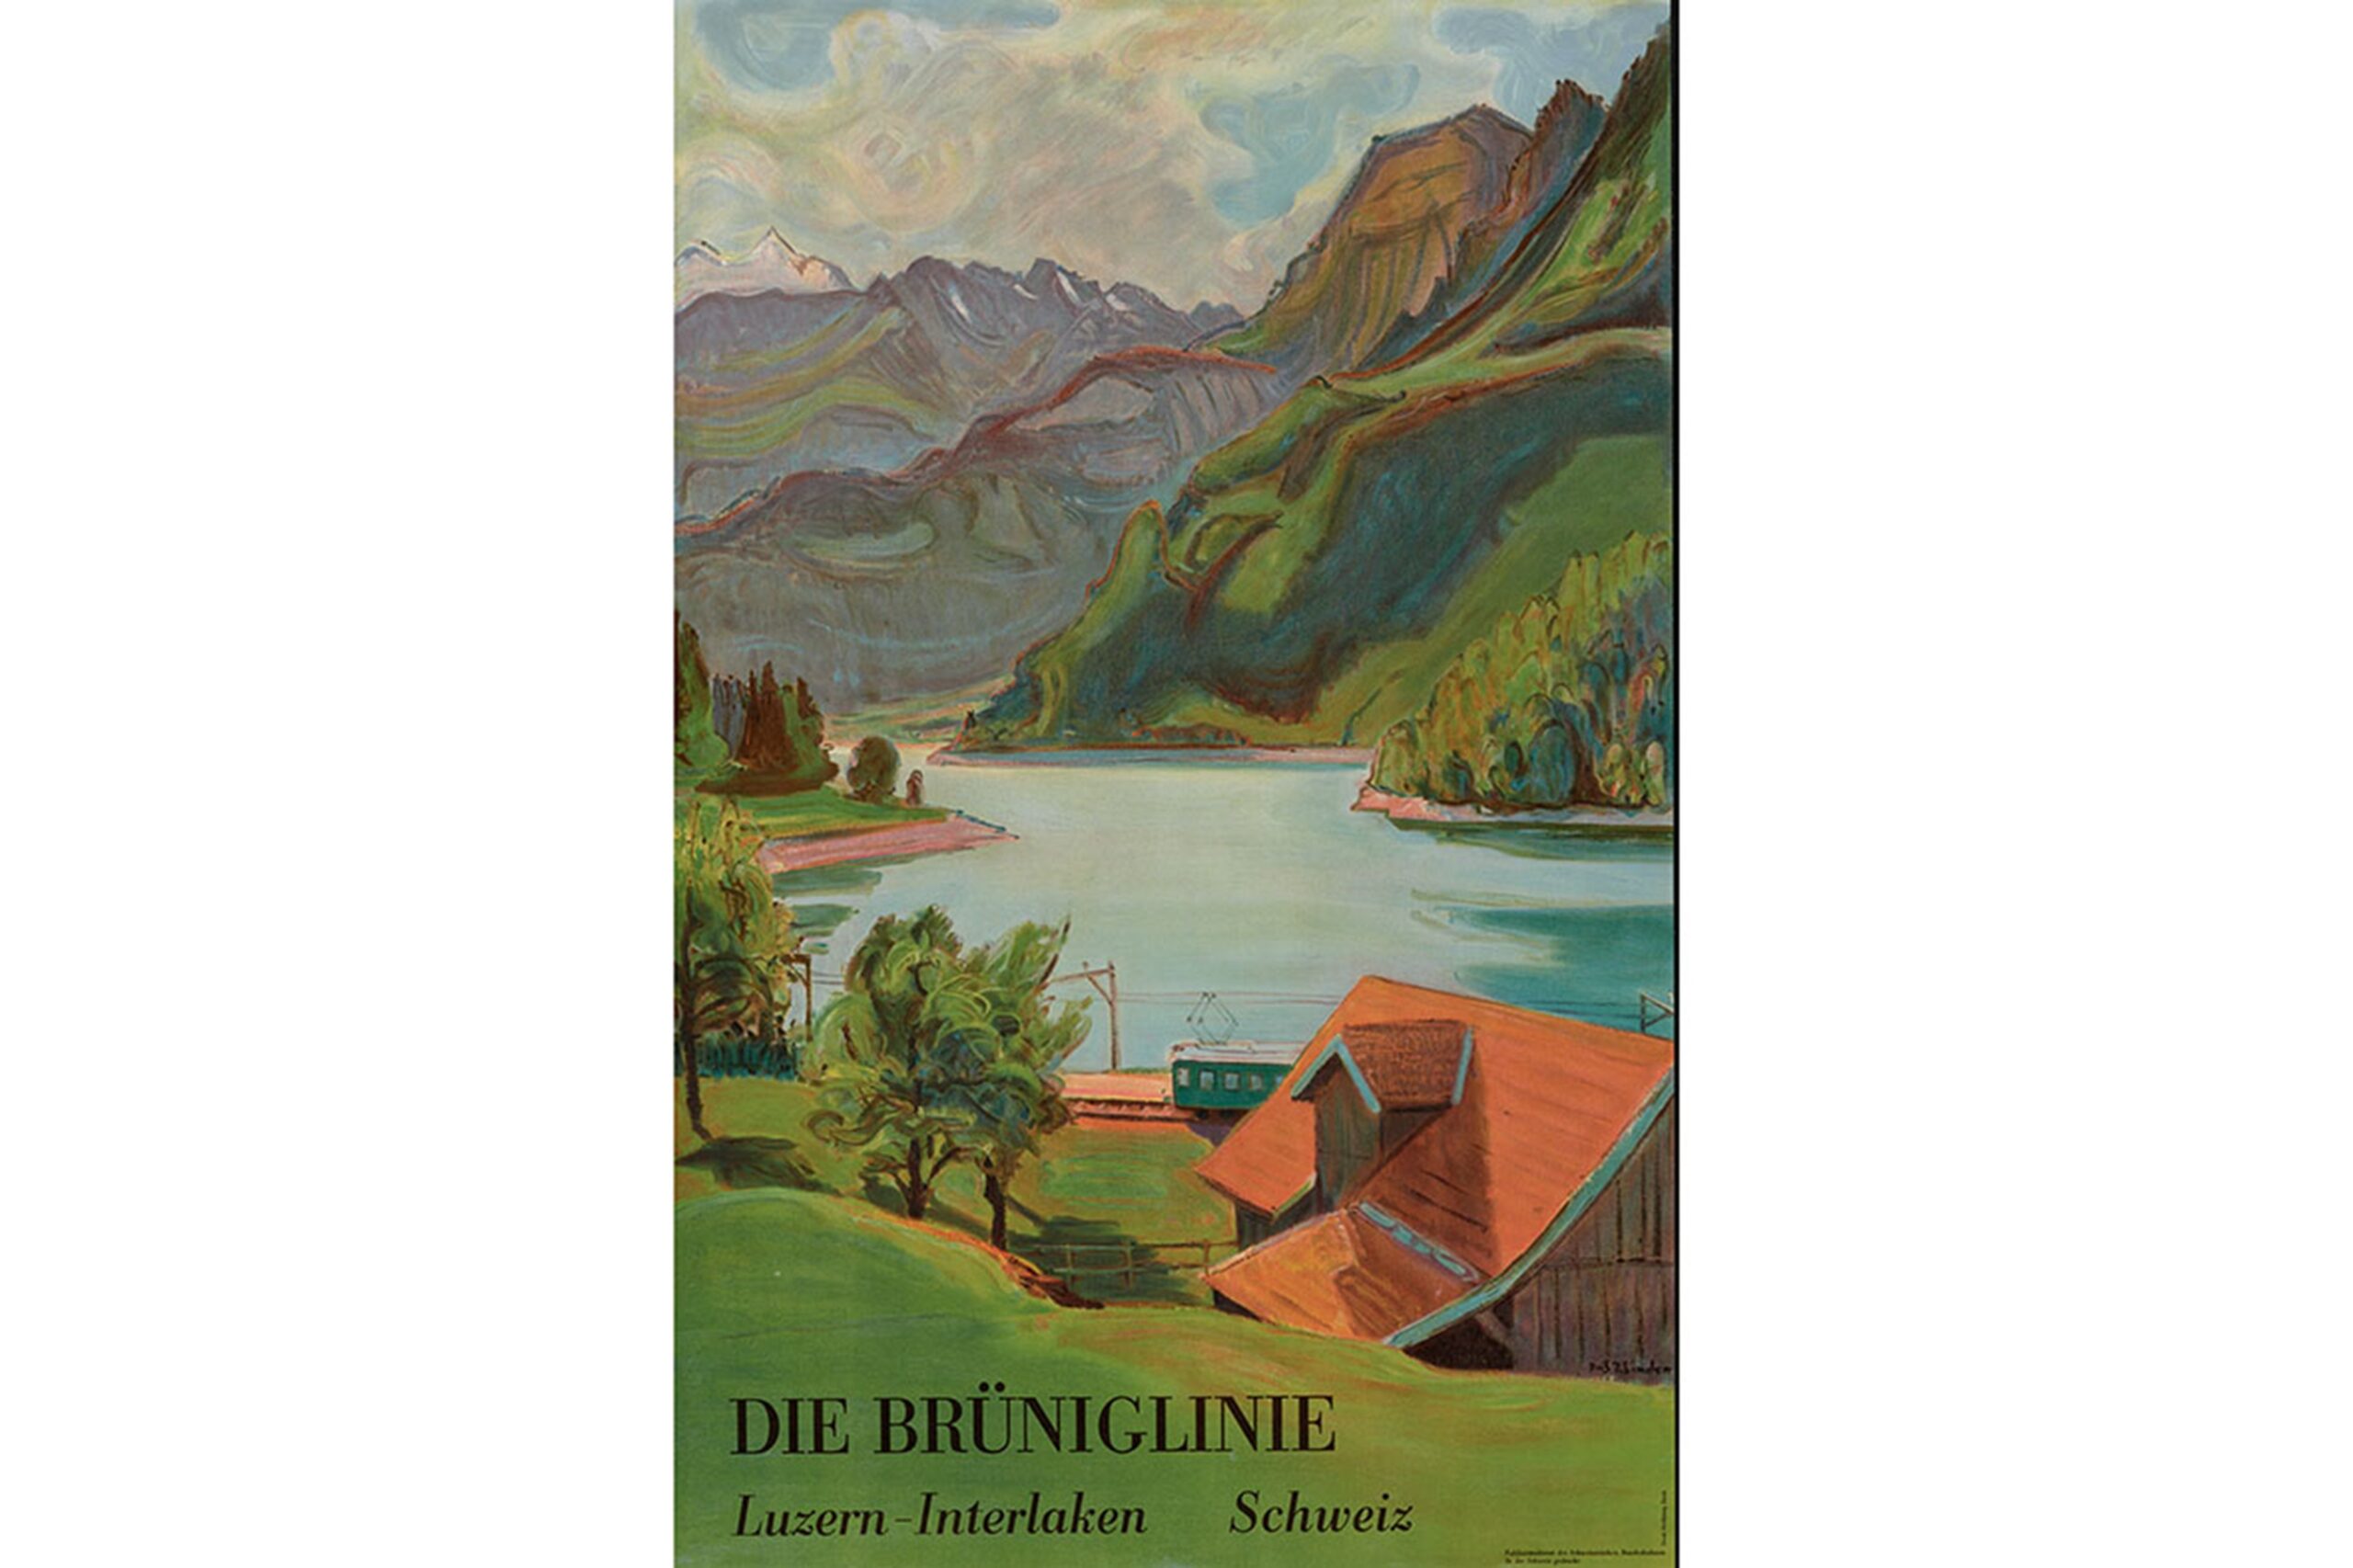 Die Brüniglinie Luzern–Interlaken Schweiz, Plakat von J. E. Wolfensberger, gemalt von Fritz Karl Zbinen 1954, ©SBB Historic